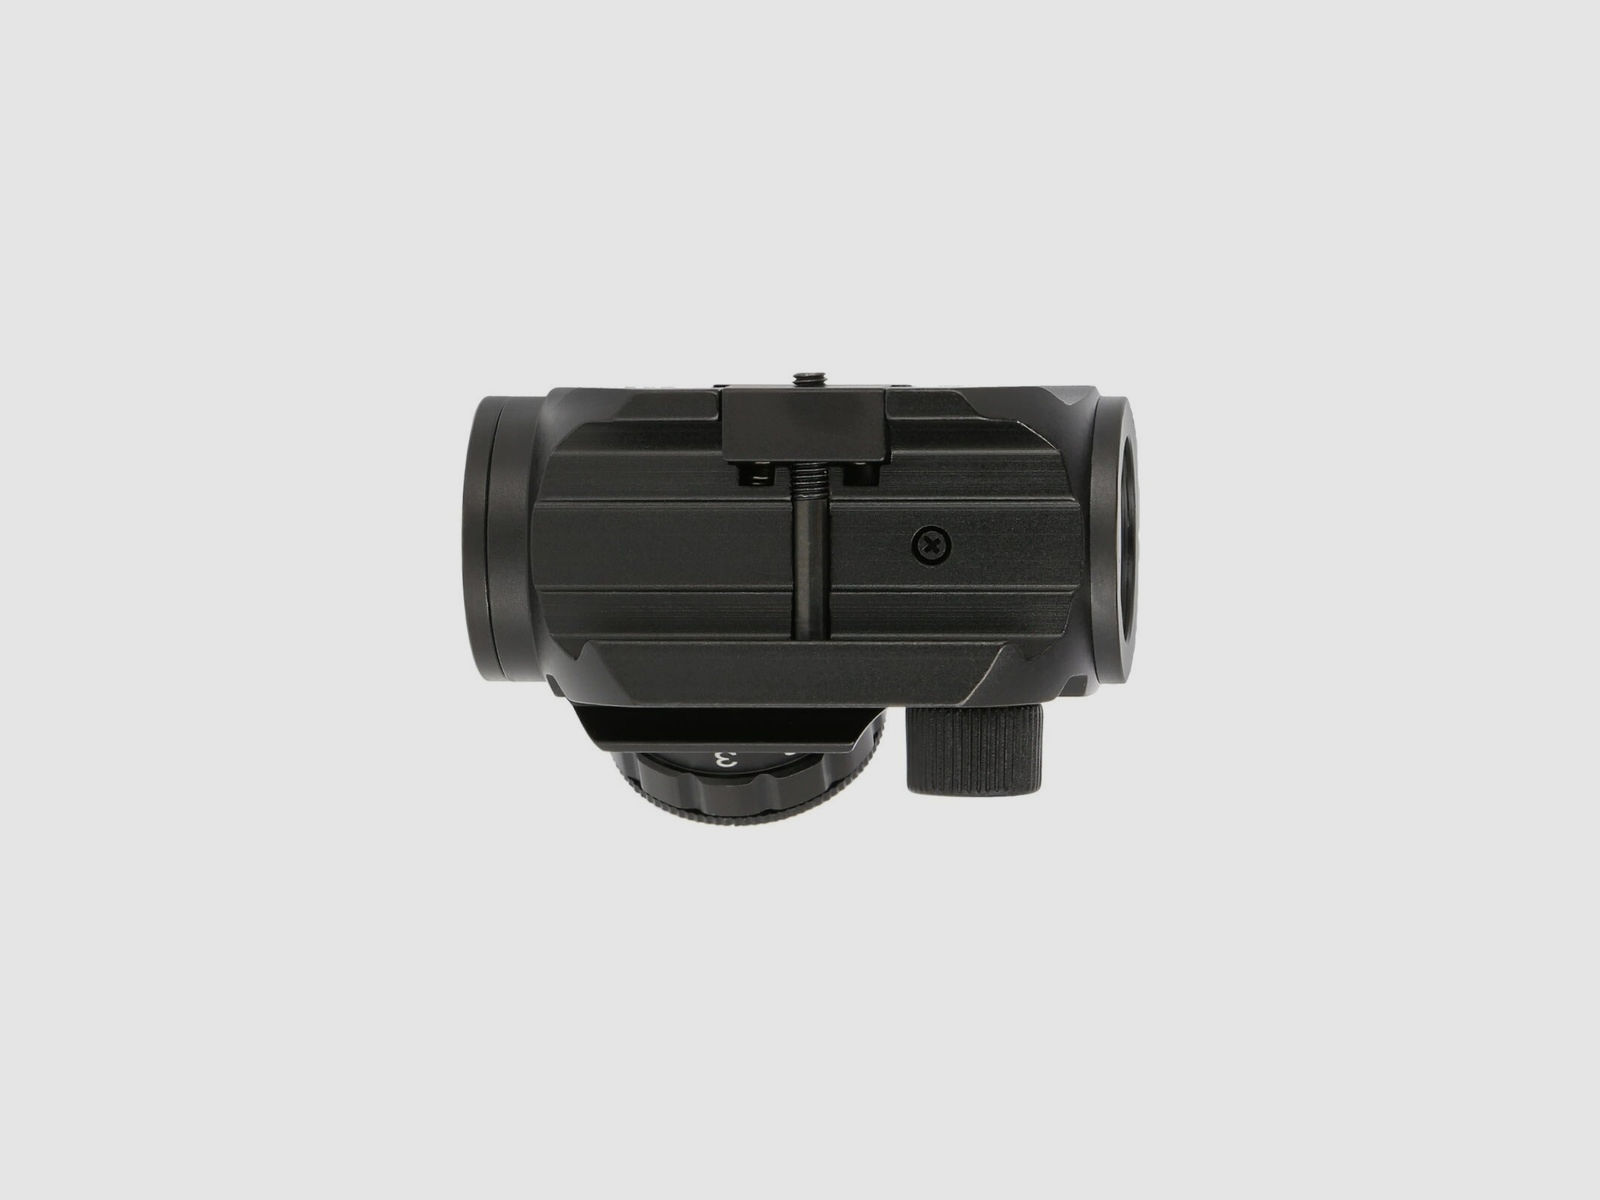 4komma5 HDM1K 1x28 Red Dot / Leuchtpunktvisier mit Weaver-Montage